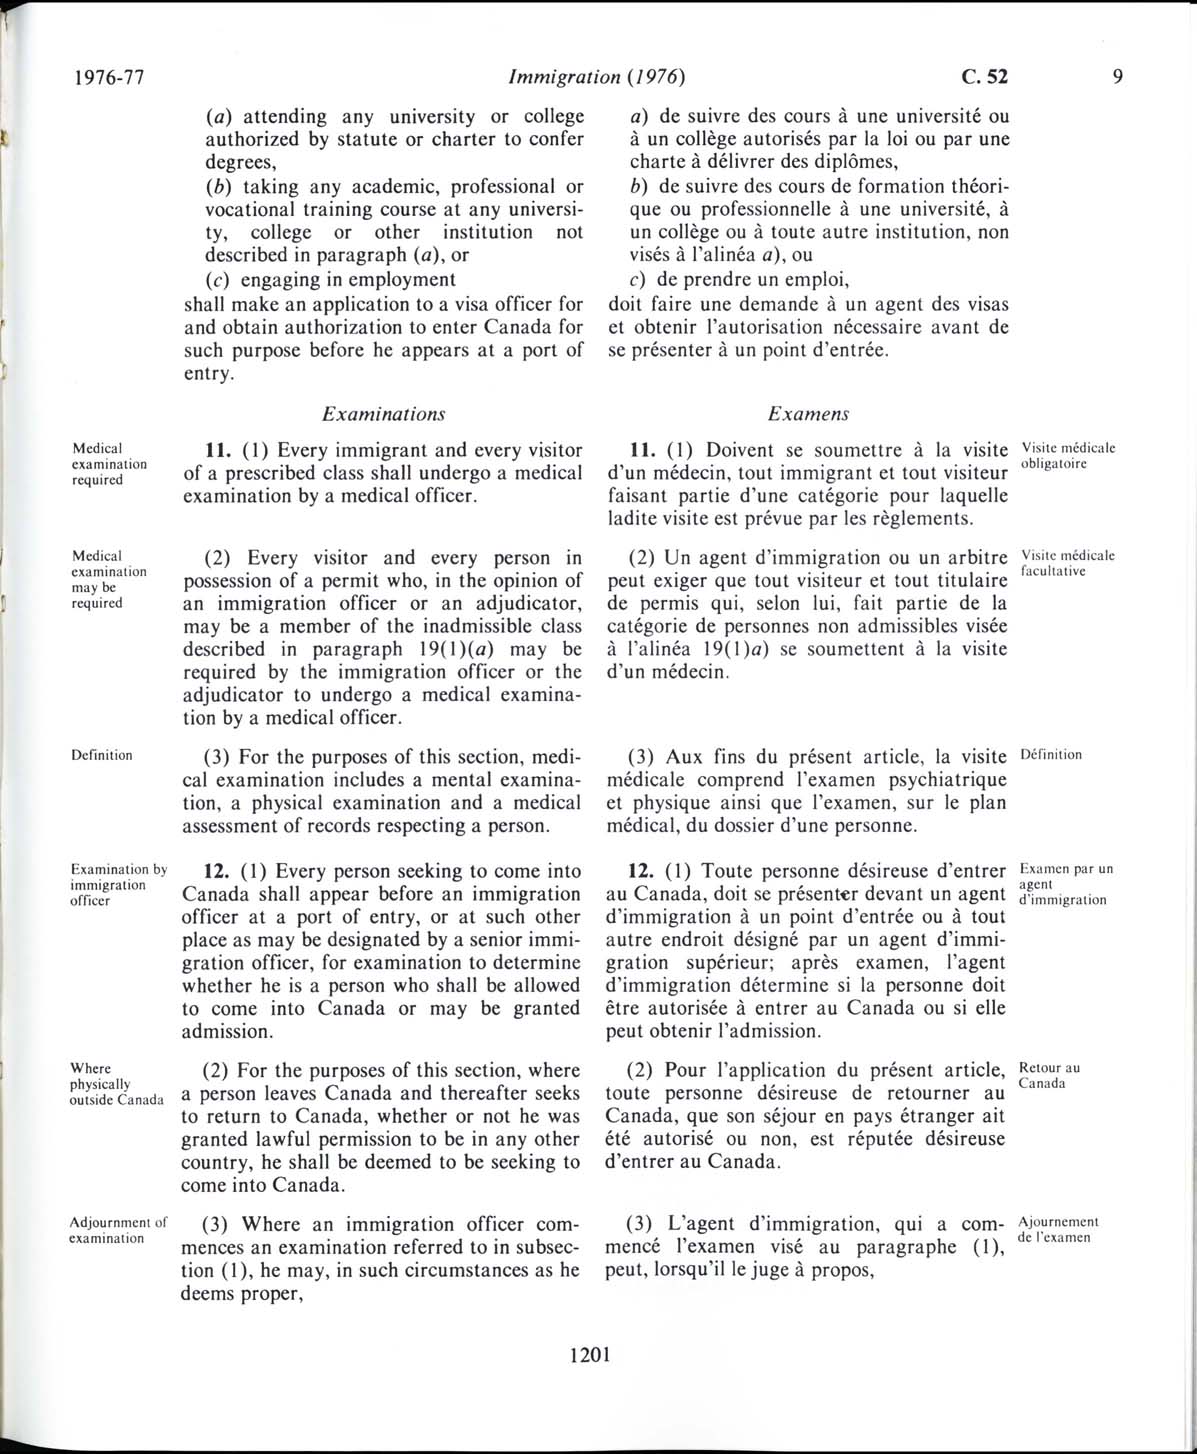 Page 1201 Loi sur l’immigration de 1976